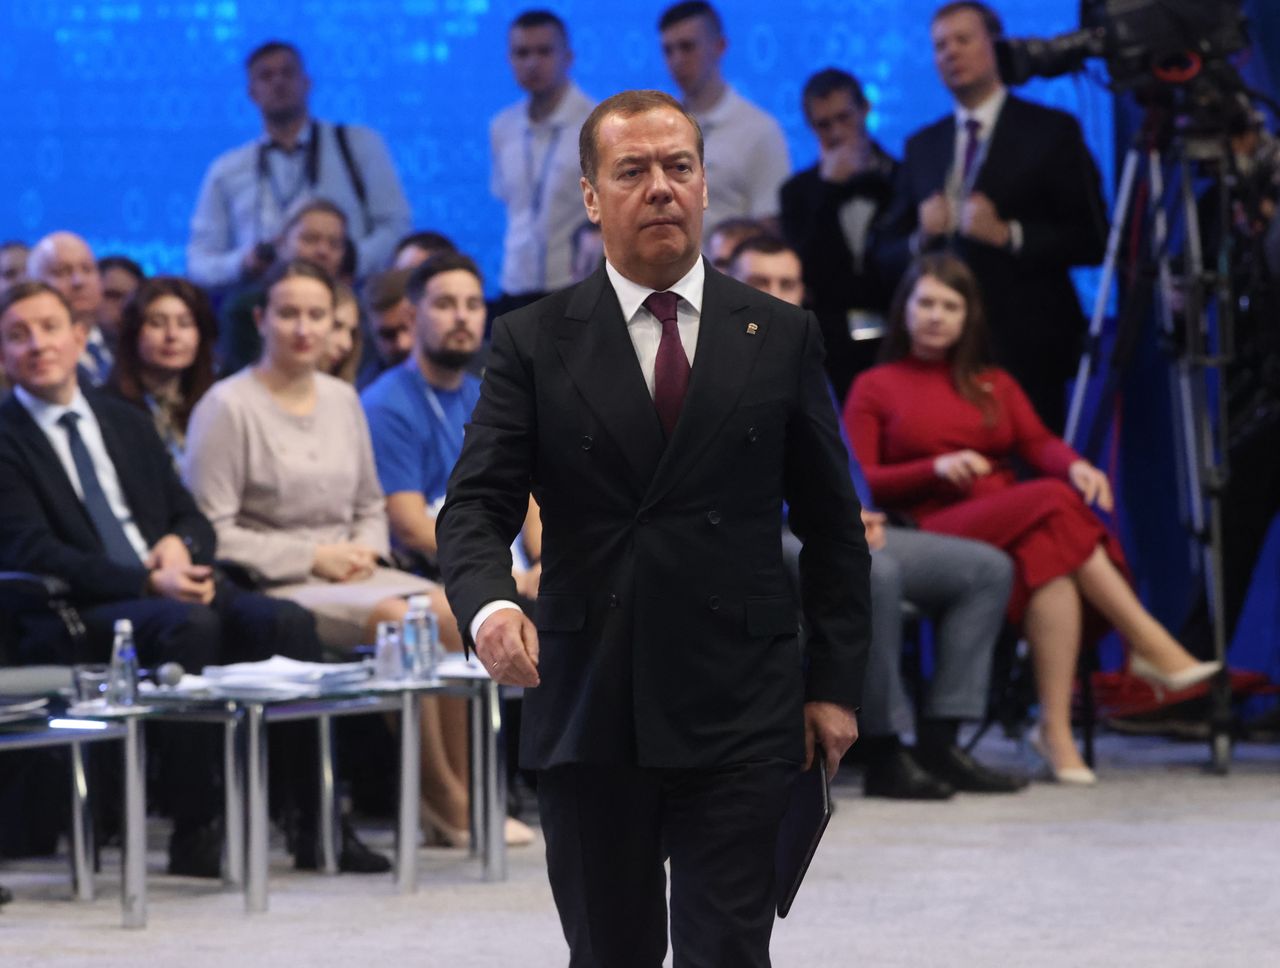 Arrest warrants for Russian officials could spark war: Medvedev warns